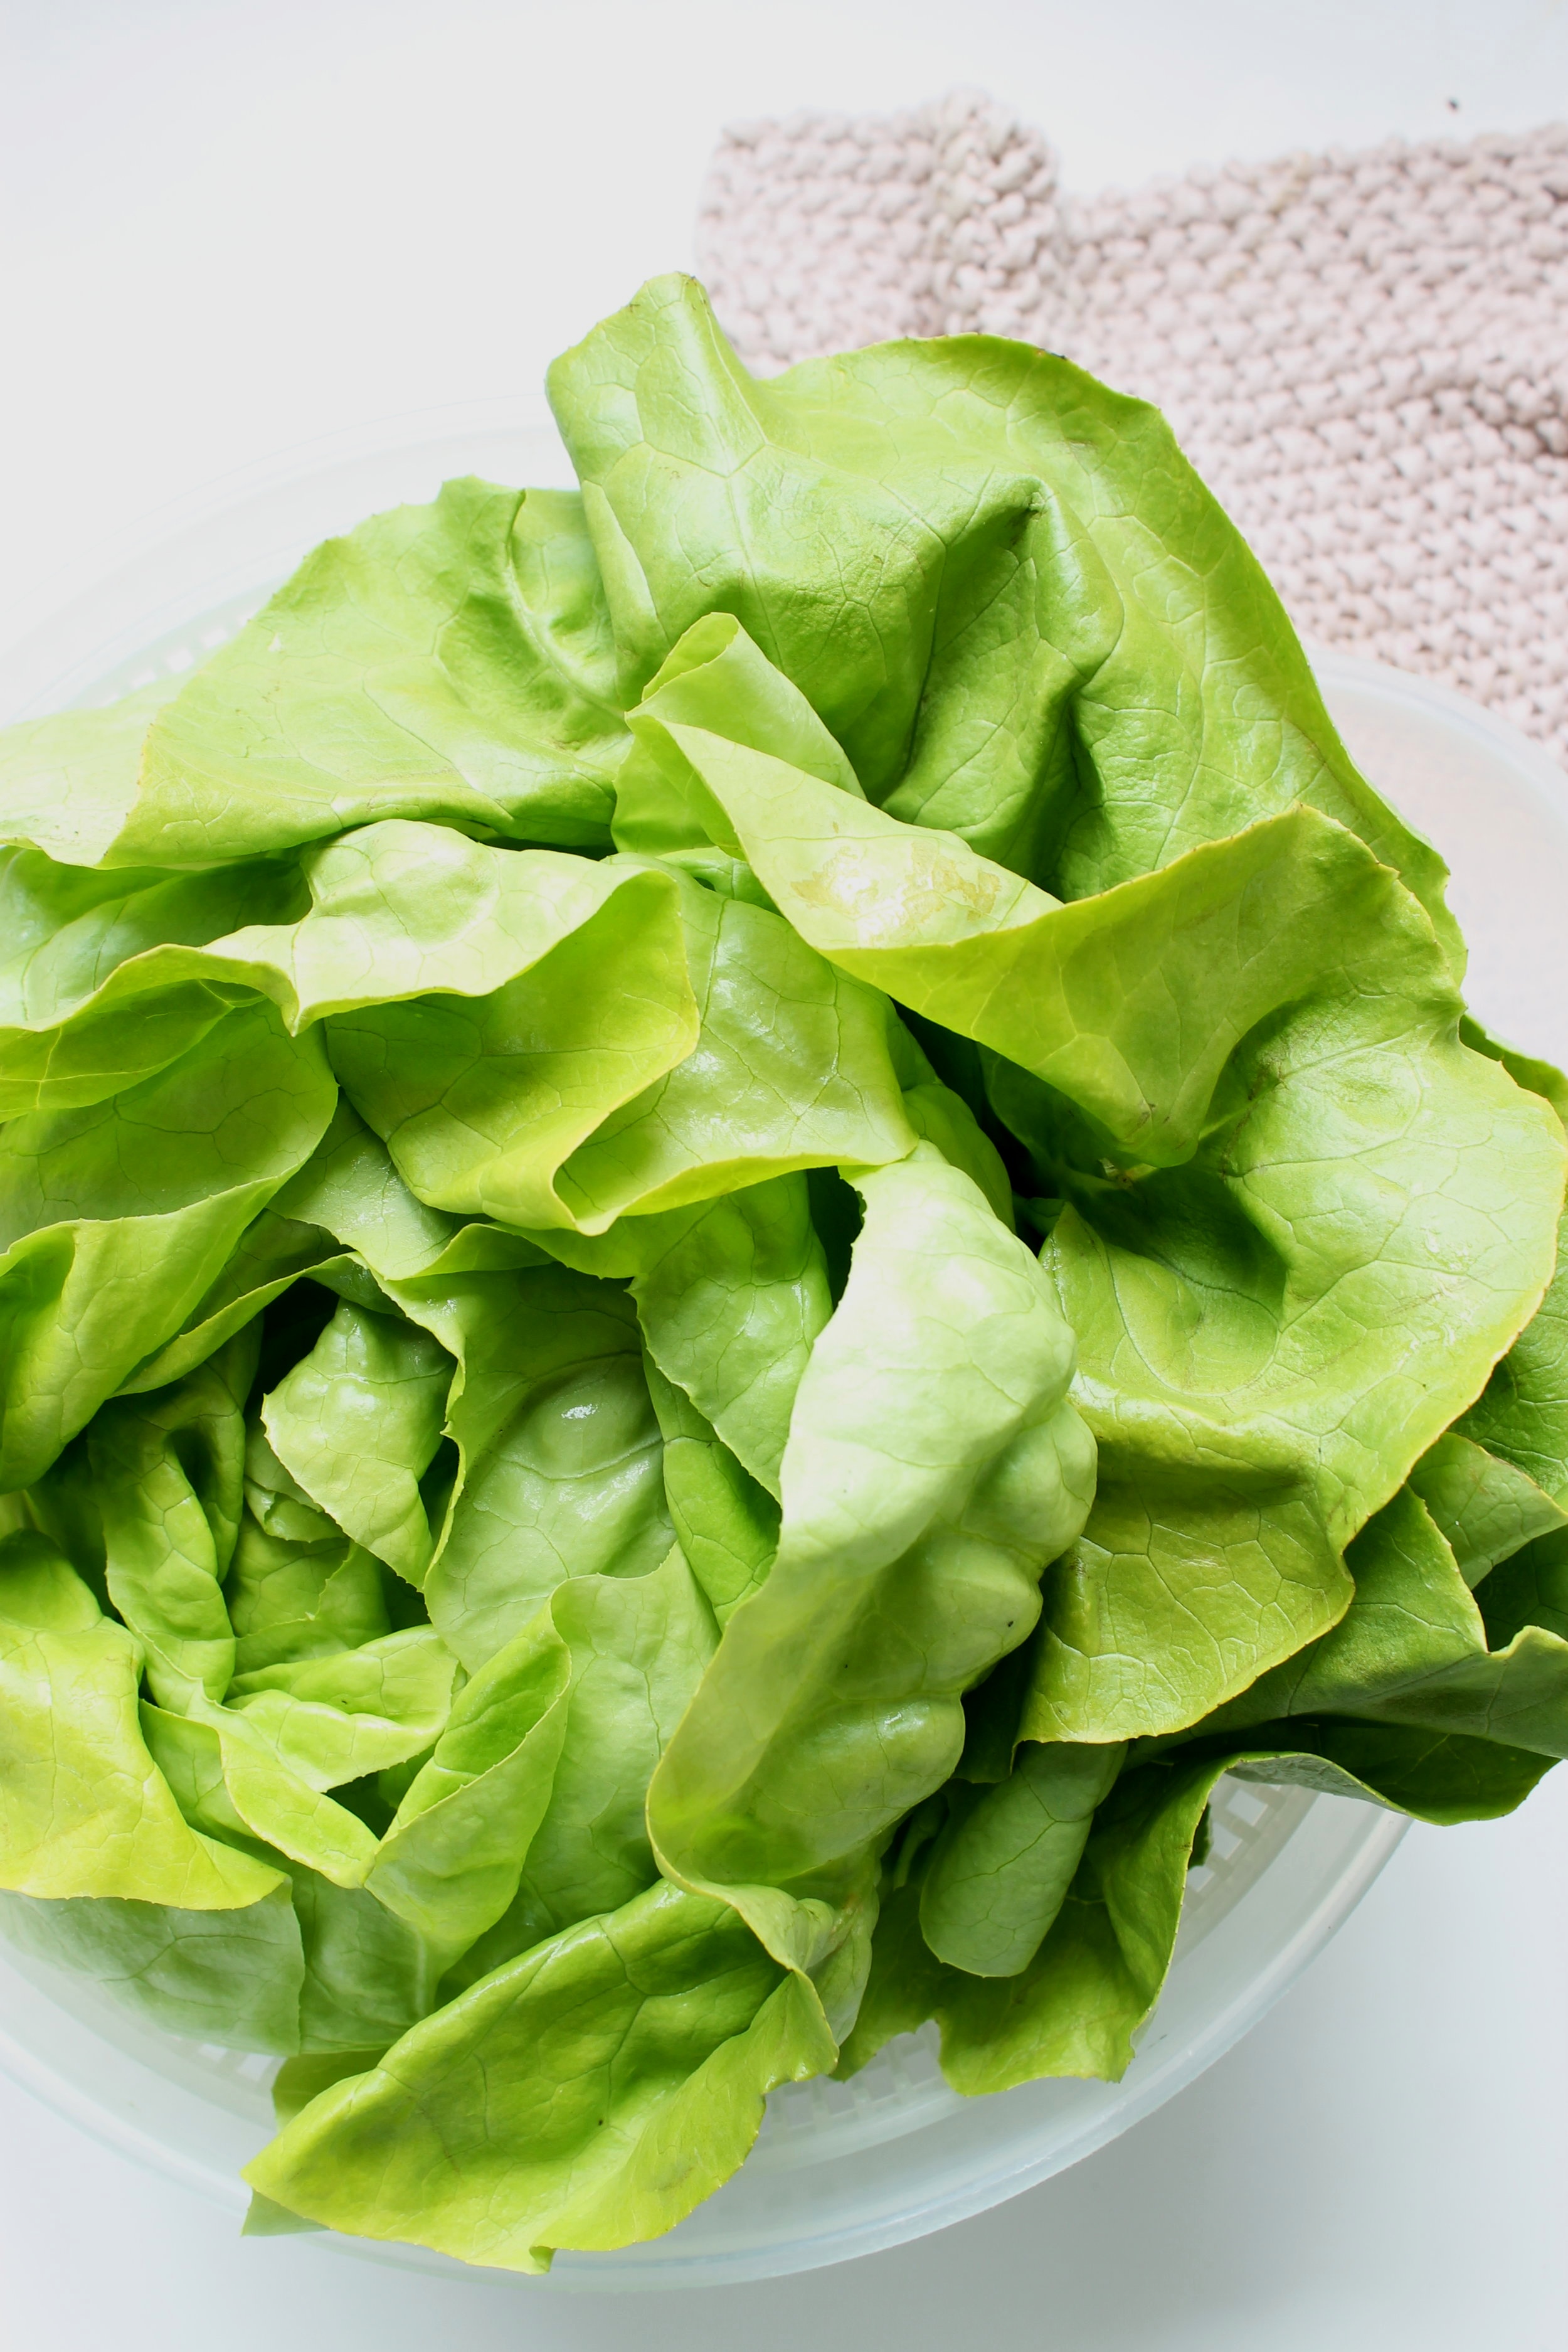 Supergreen salad with creamy cashew dressing | Beloved Kitchen